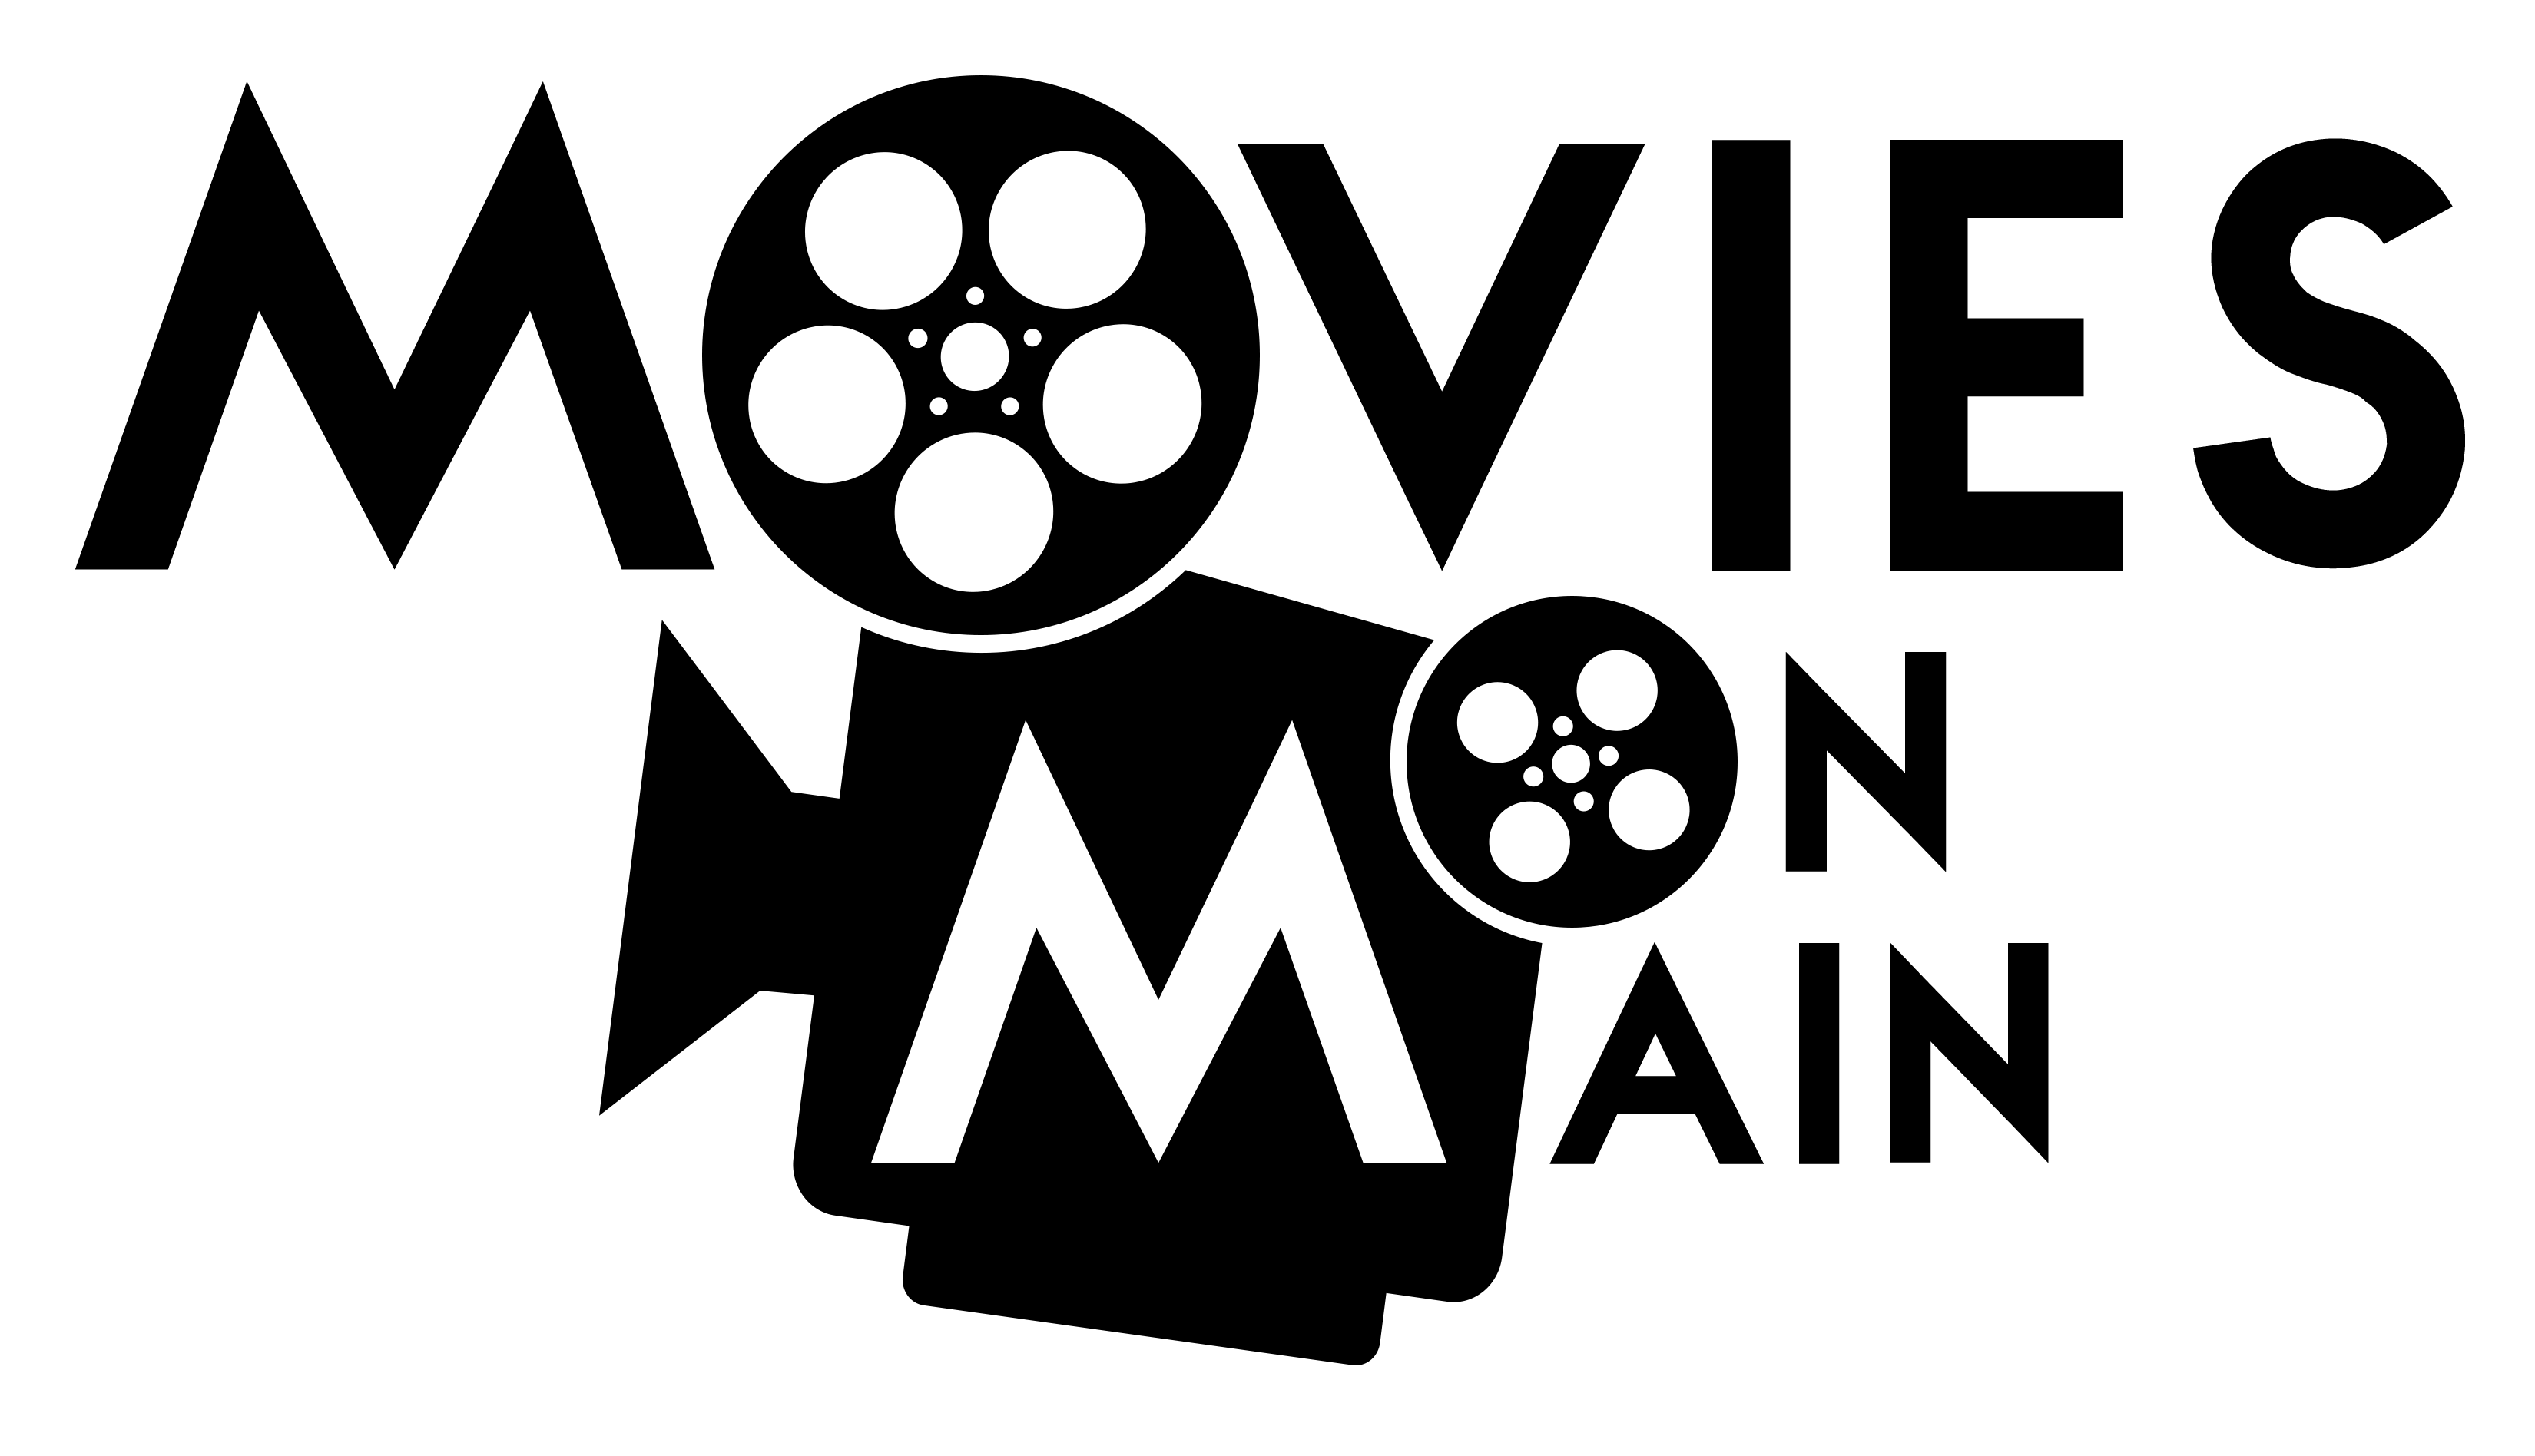 Google Movies Logo - Movies on Main Logos – Movies on Main